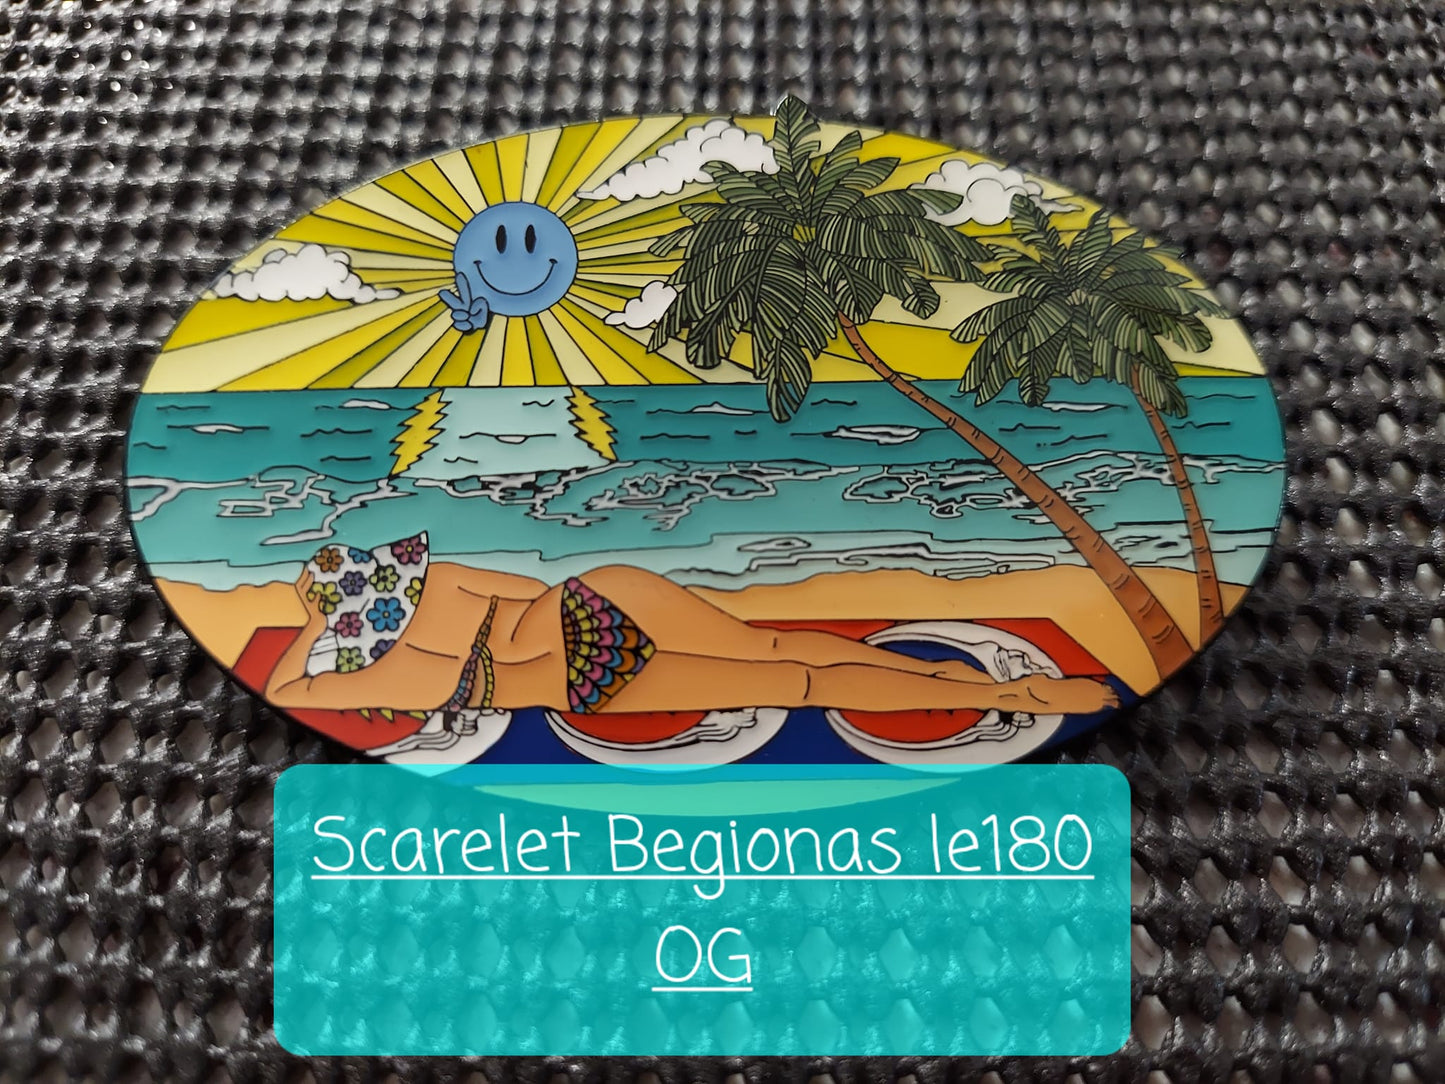 Scarlet Begonias - Og le180